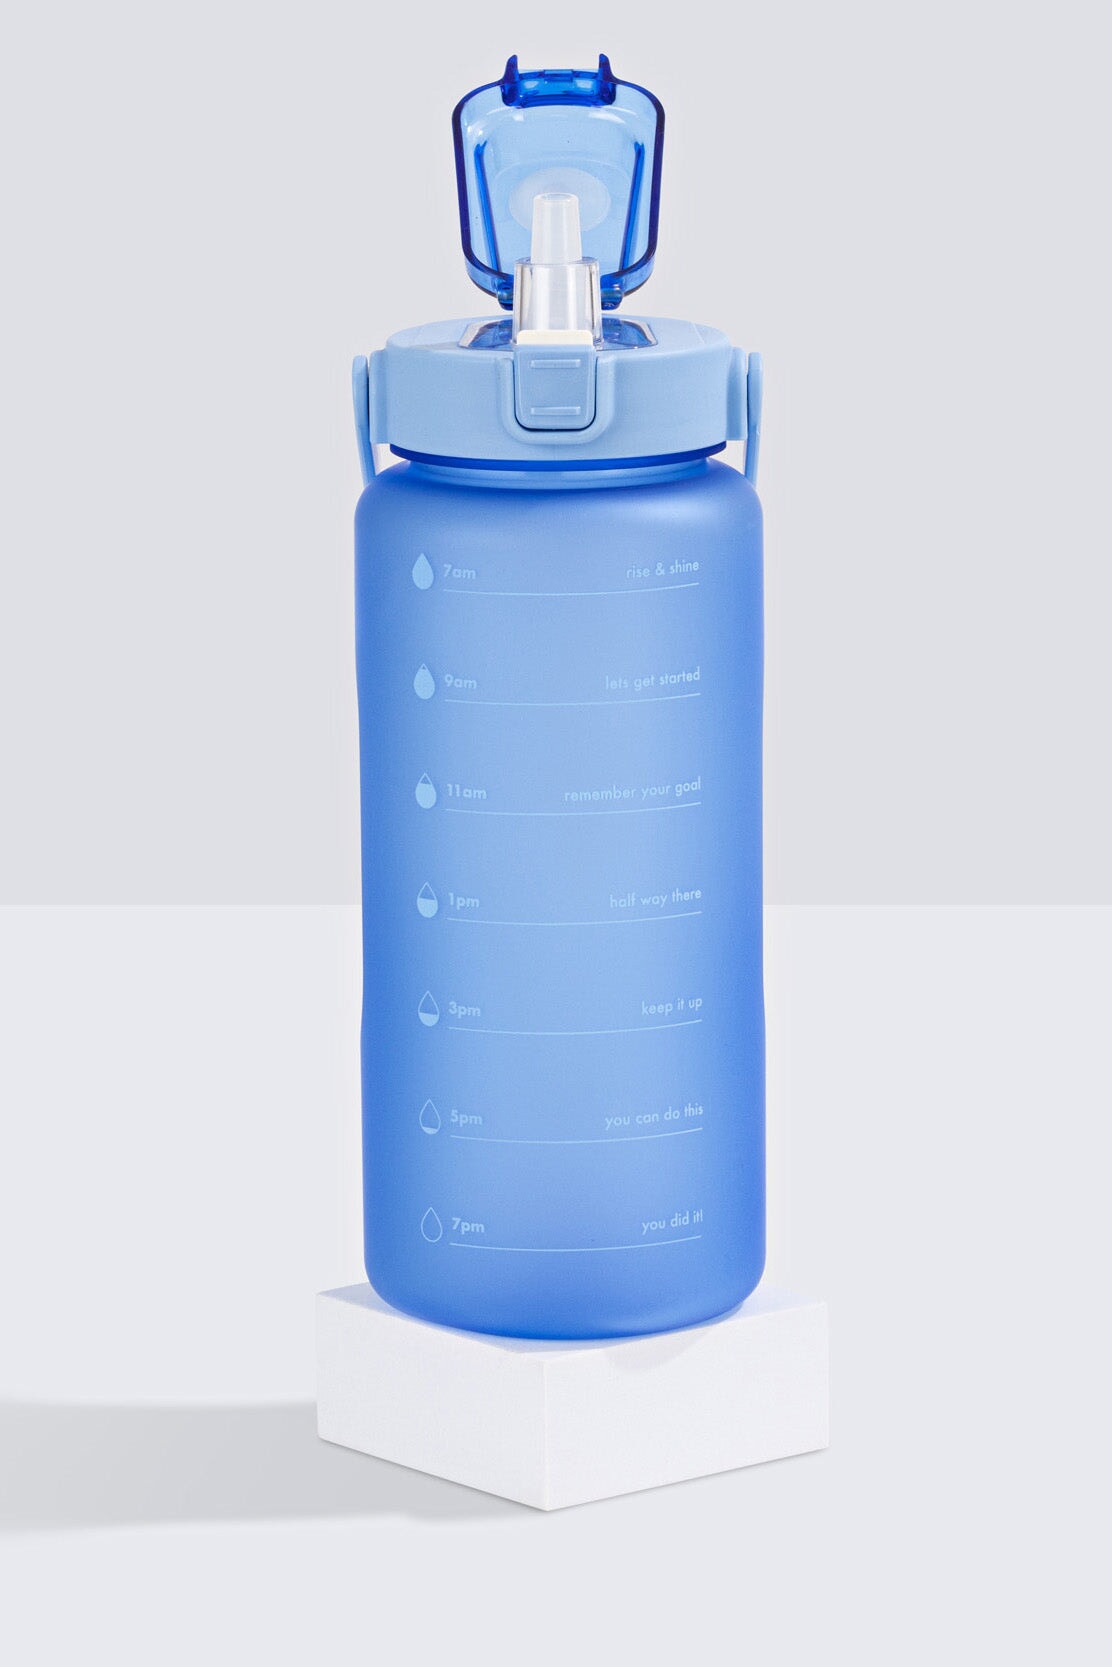 Wellness Bottle 2L - Blue Drink Bottle Selfawear 